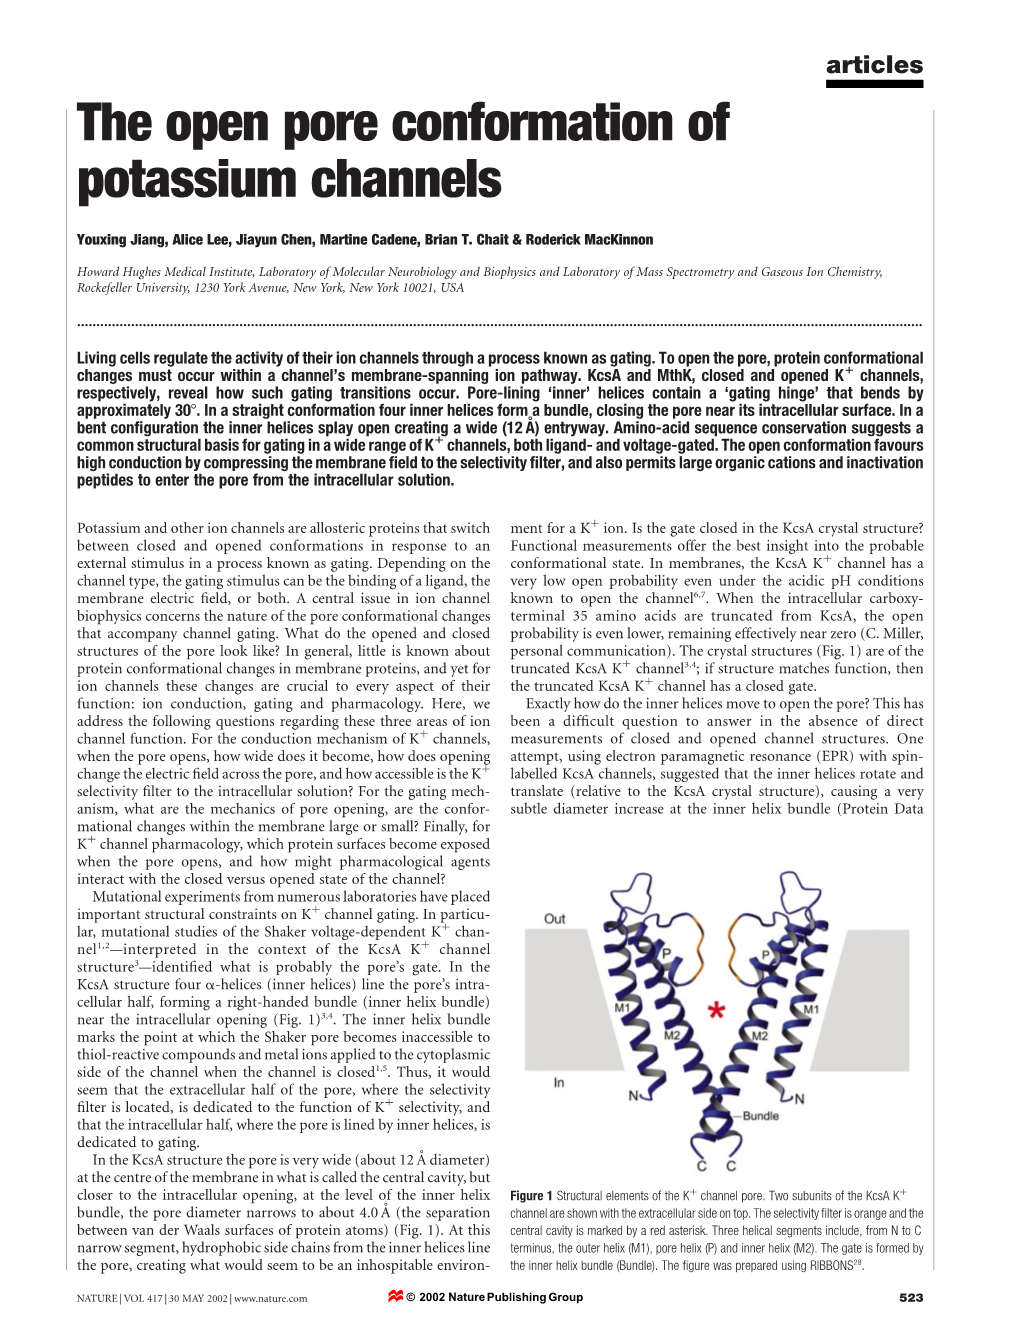 The Open Pore Conformation of Potassium Channels